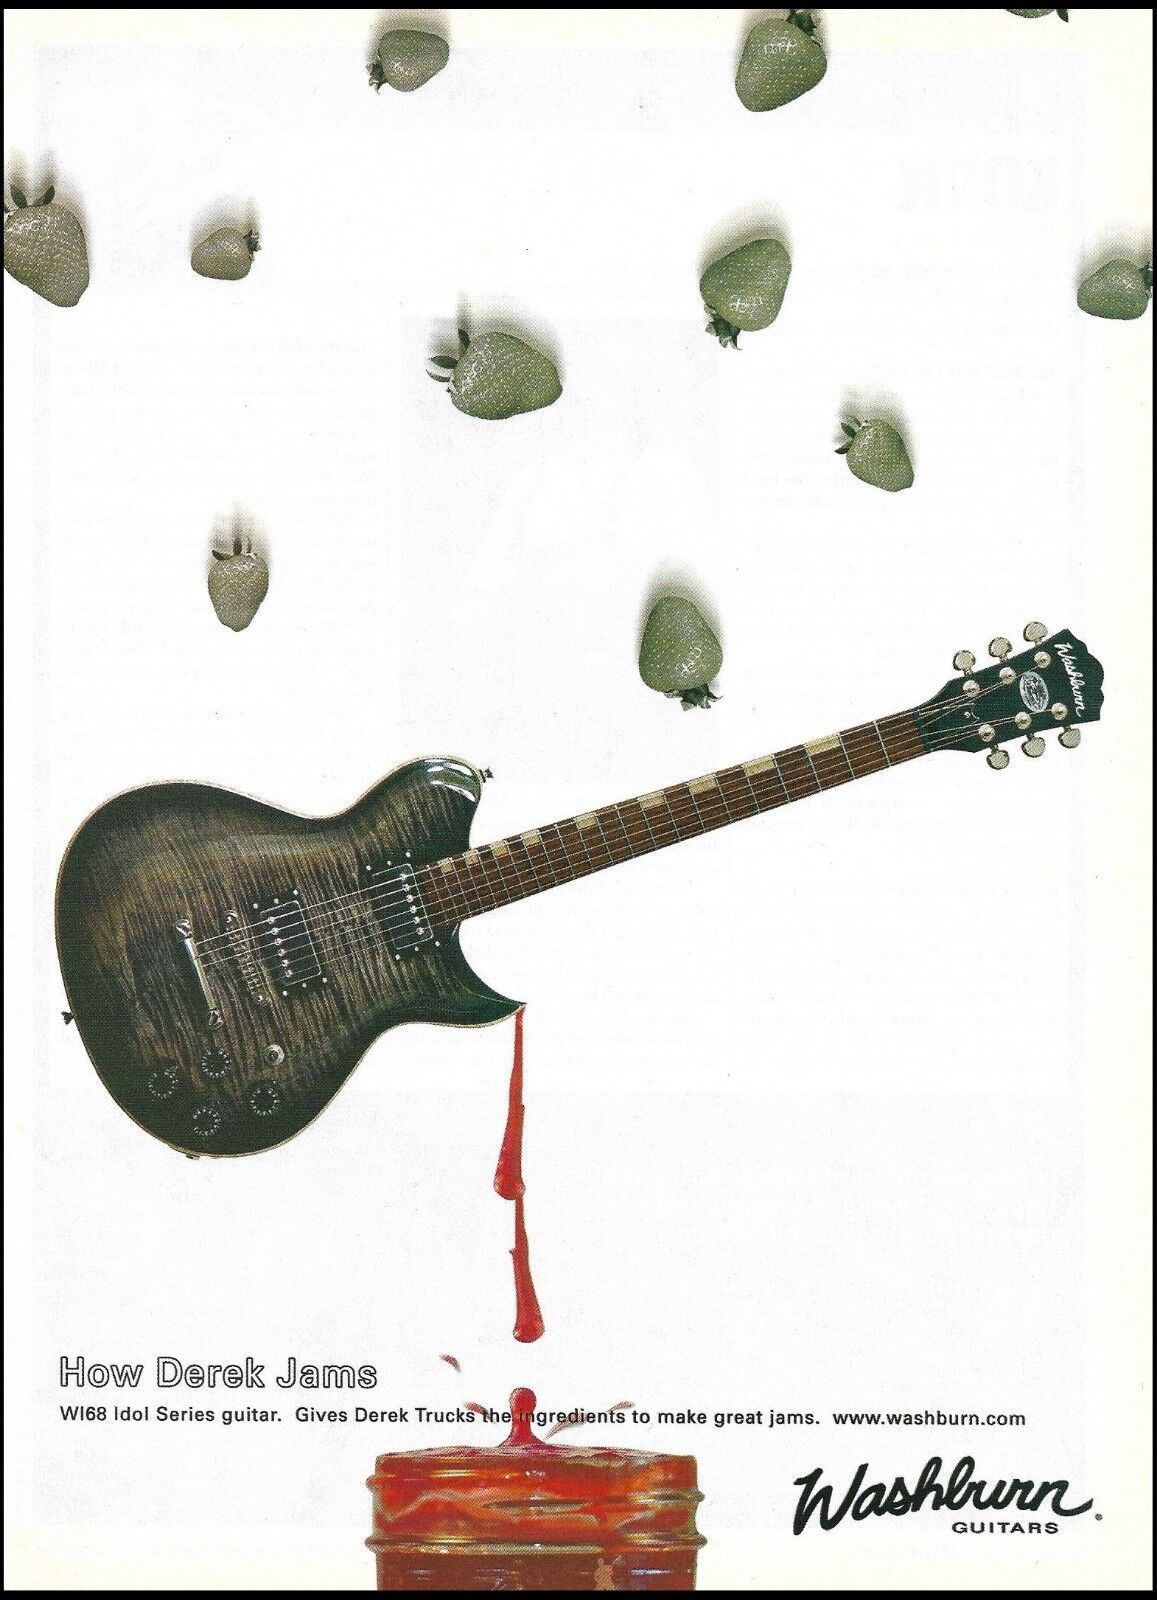 Allman Brothers Derek Trucks Signature Washburn Idol WI68 guitar 2003 ad print